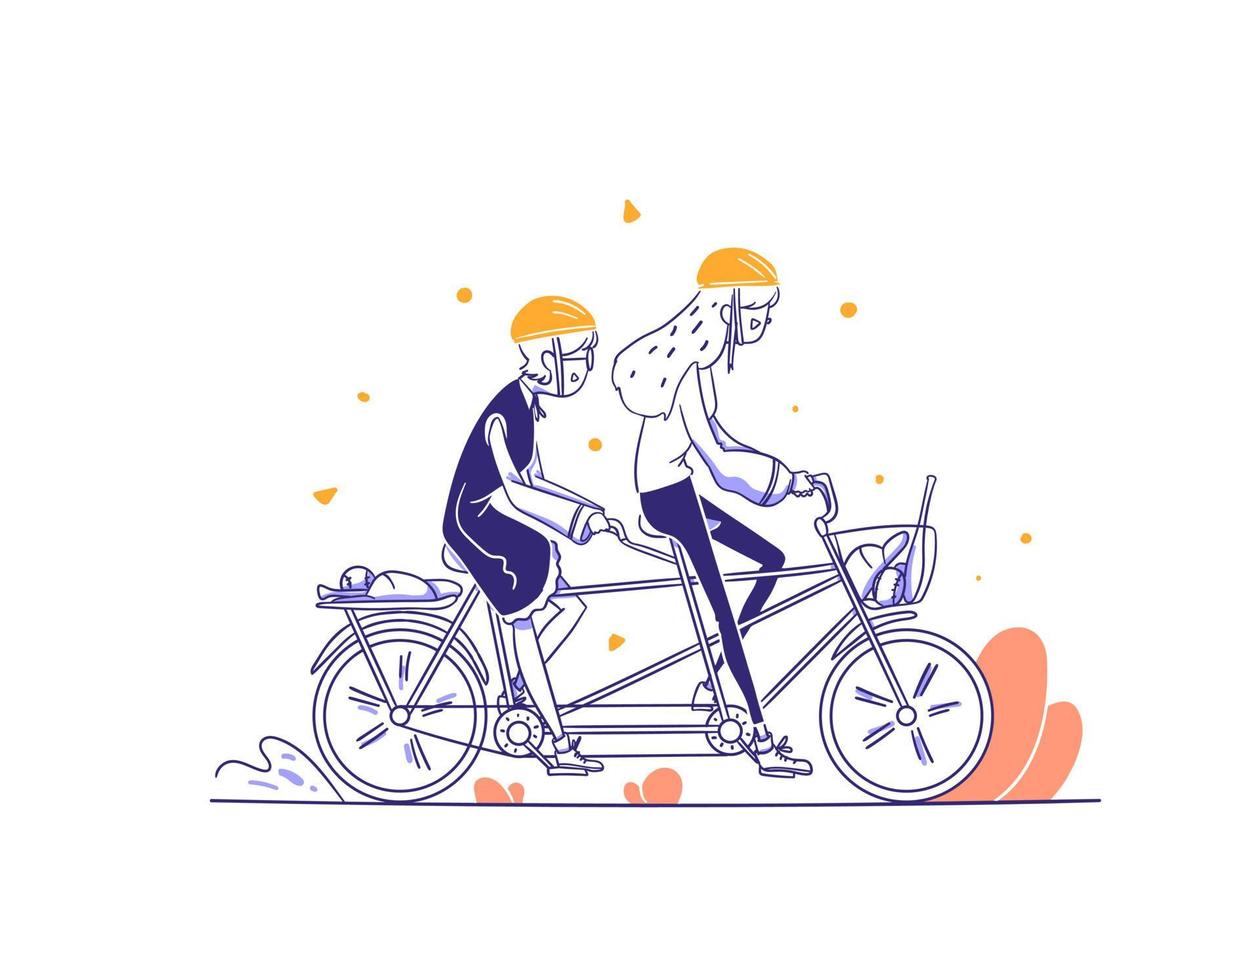 e-commerce sport categorie mensen rijden tandem fiets concept illustratie in overzicht handgetekende ontwerpstijl vector